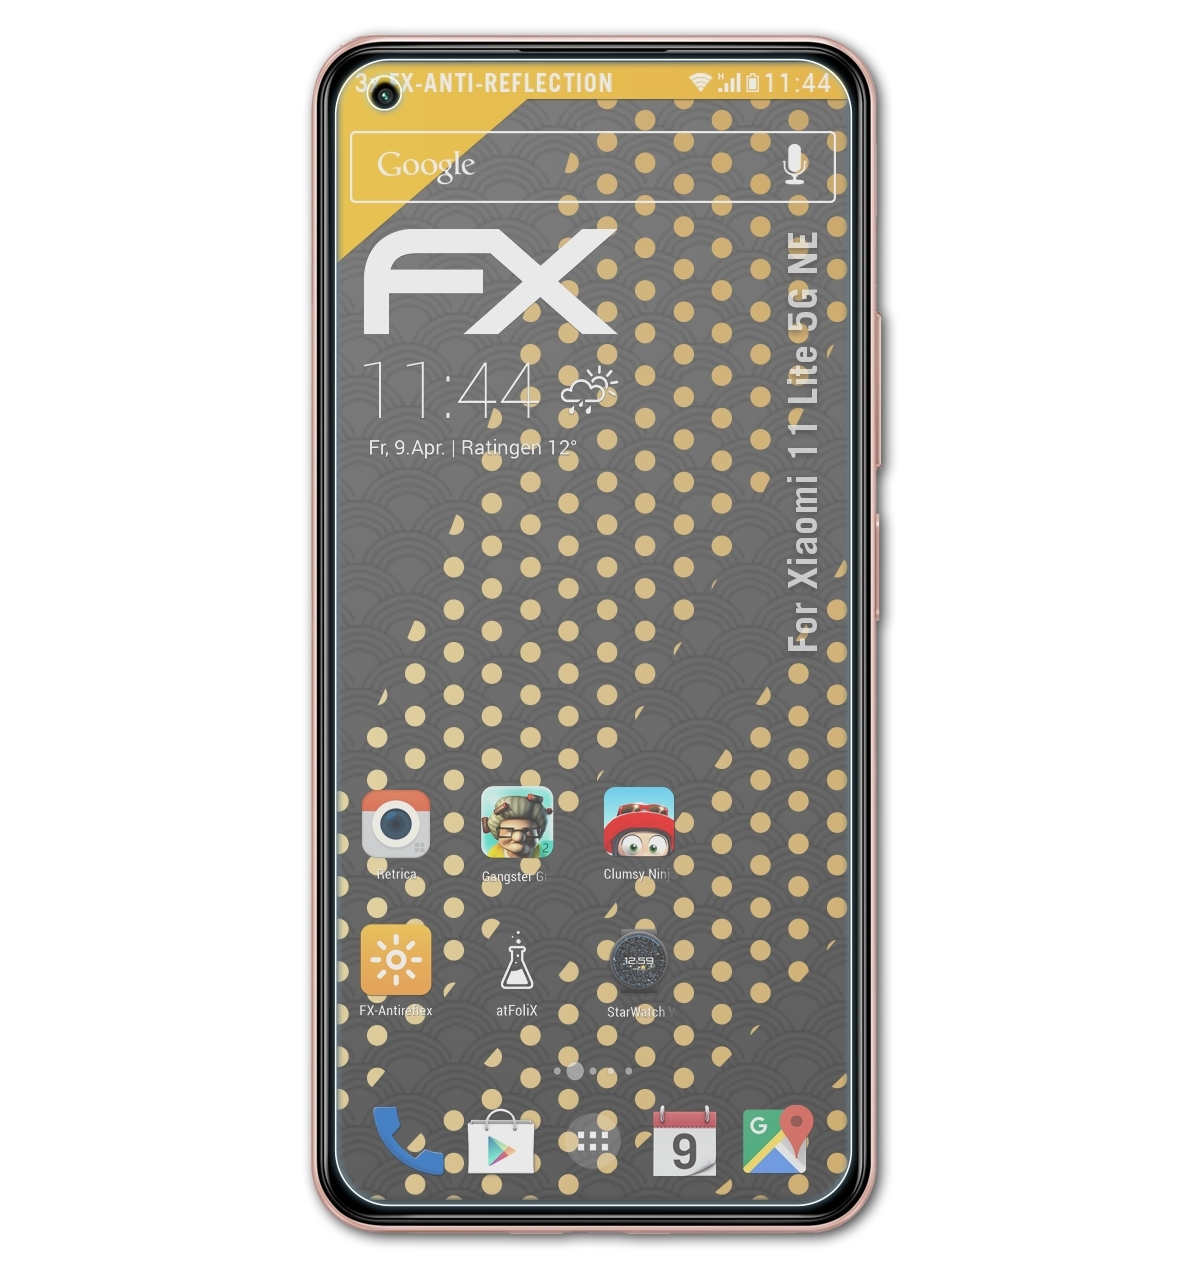 5G 11 3x ATFOLIX NE) Displayschutz(für Xiaomi FX-Antireflex Lite